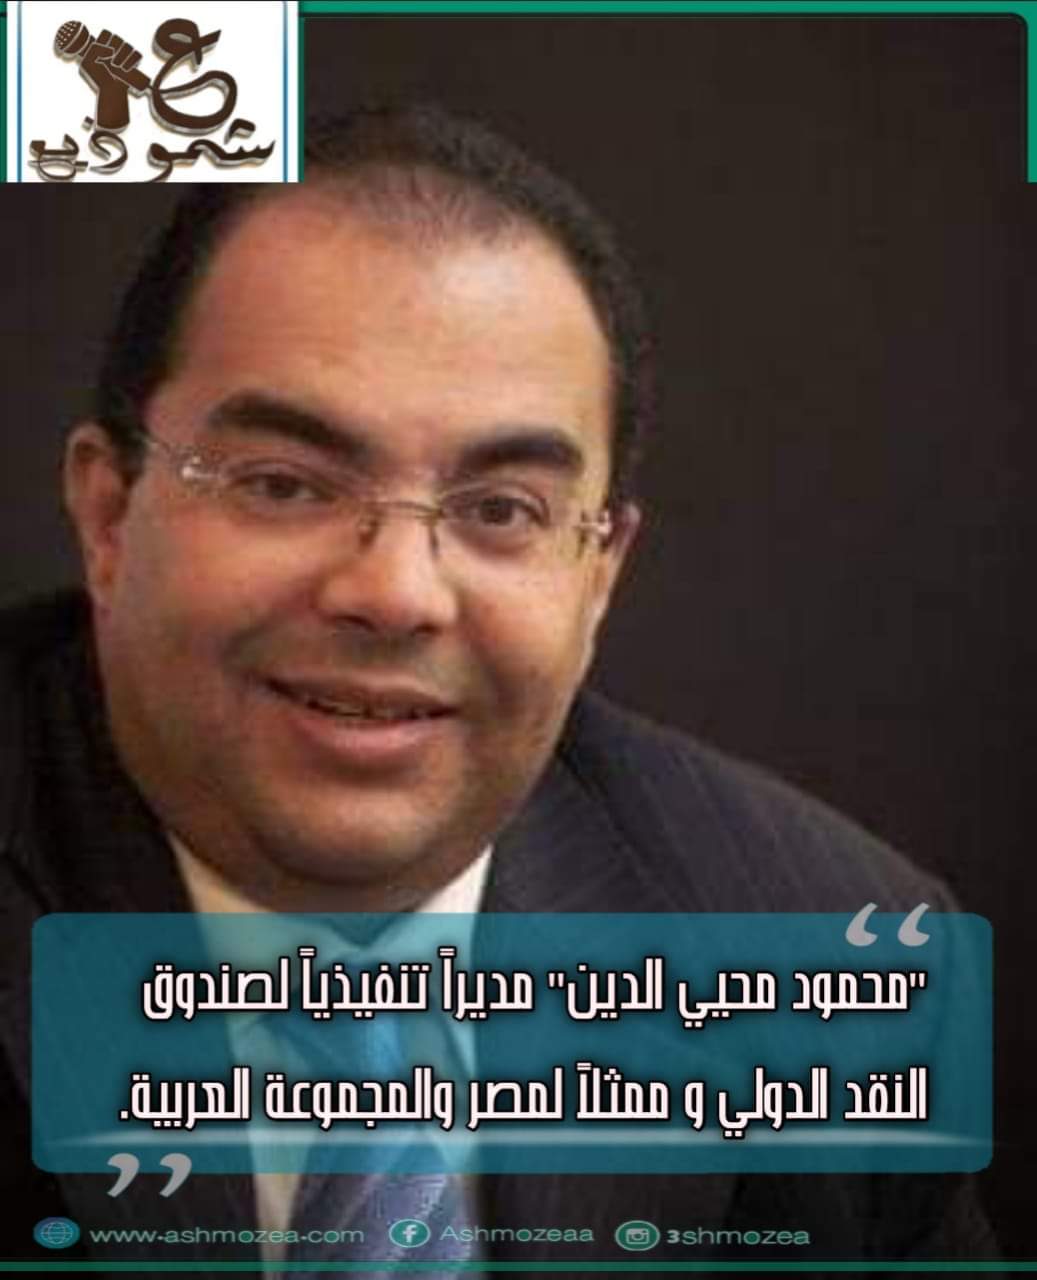 "محمود محيي الدين" مديراً تنفيذياً لصندوق النقد الدولي و ممثلاً لمصر والمجموعة العربية.